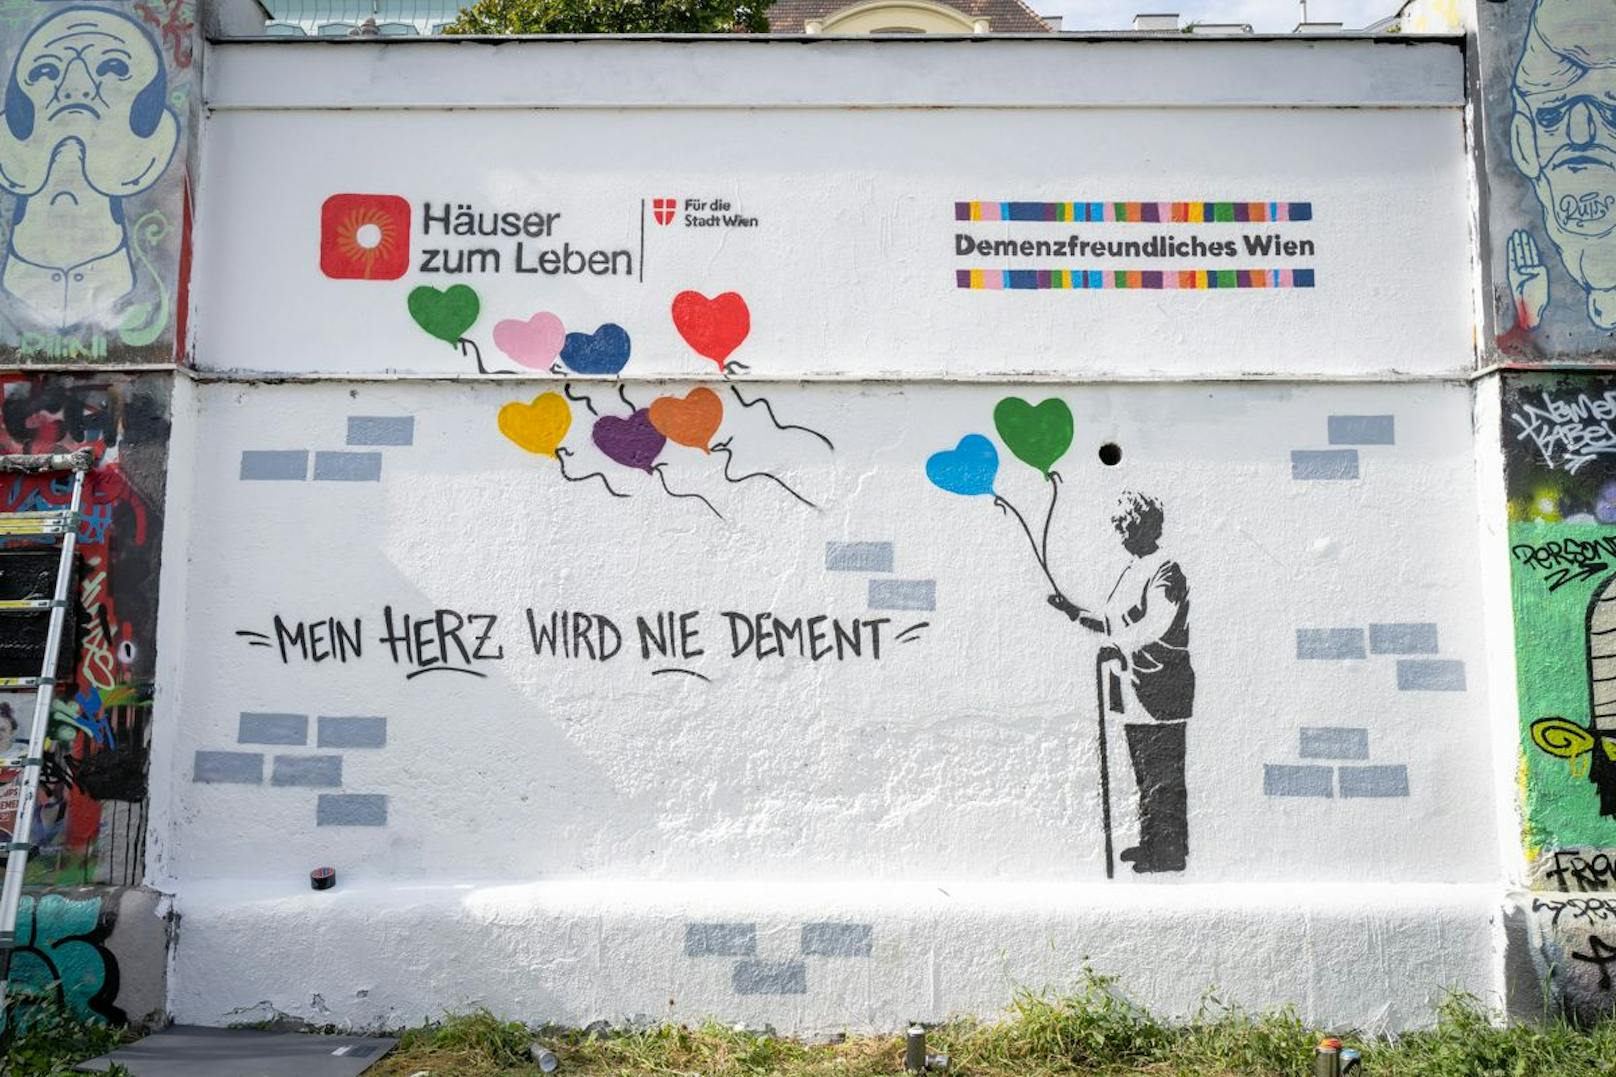 Das Hauptmotiv erinnert an ein bekanntes Motiv von Graffitti-Legende Banksy.